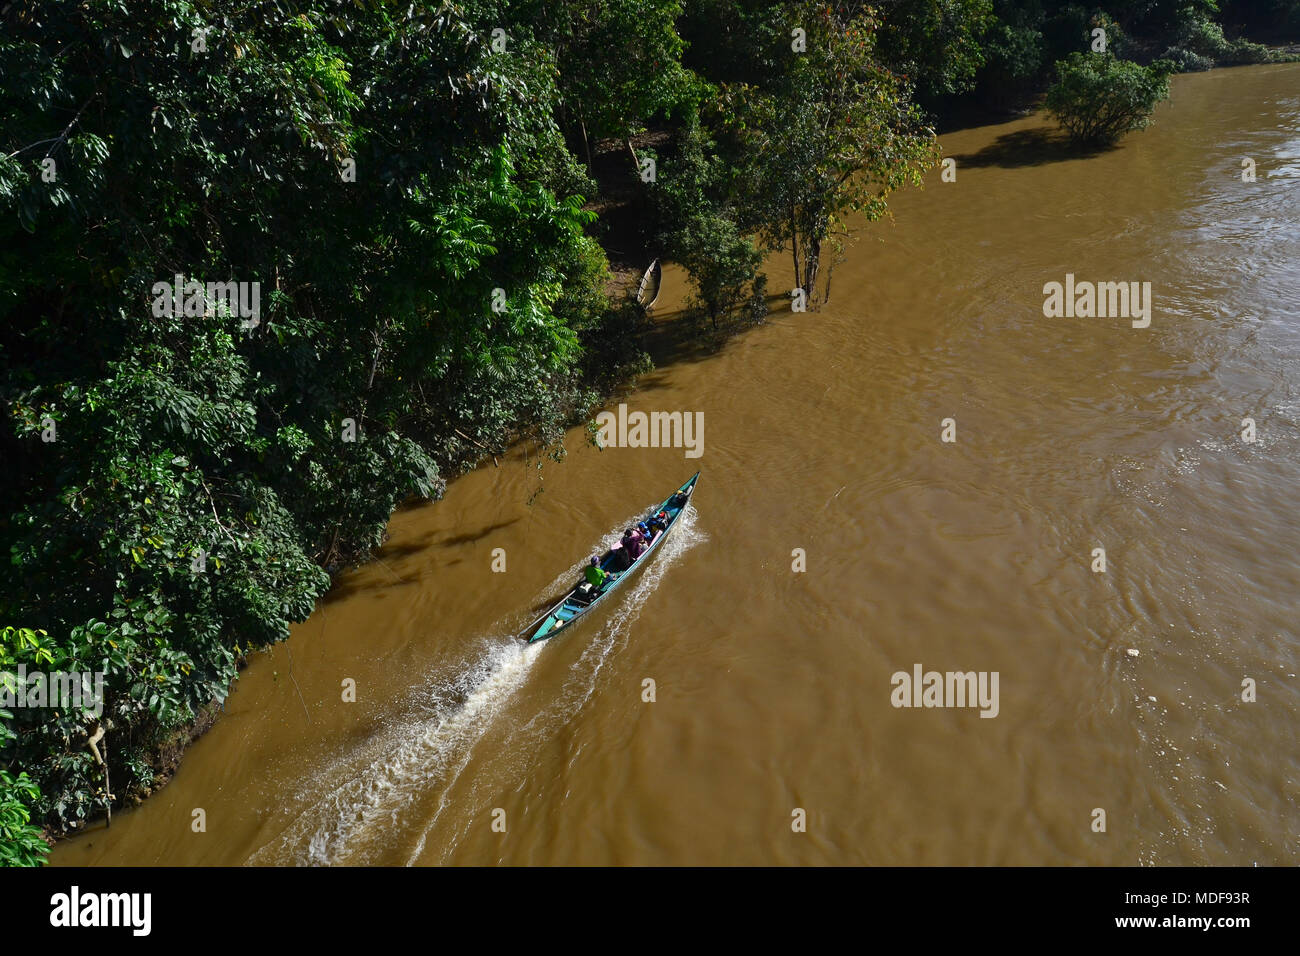 Las actividades de la comunidad en el río Barito, Borneo, Indonesia. Foto de stock